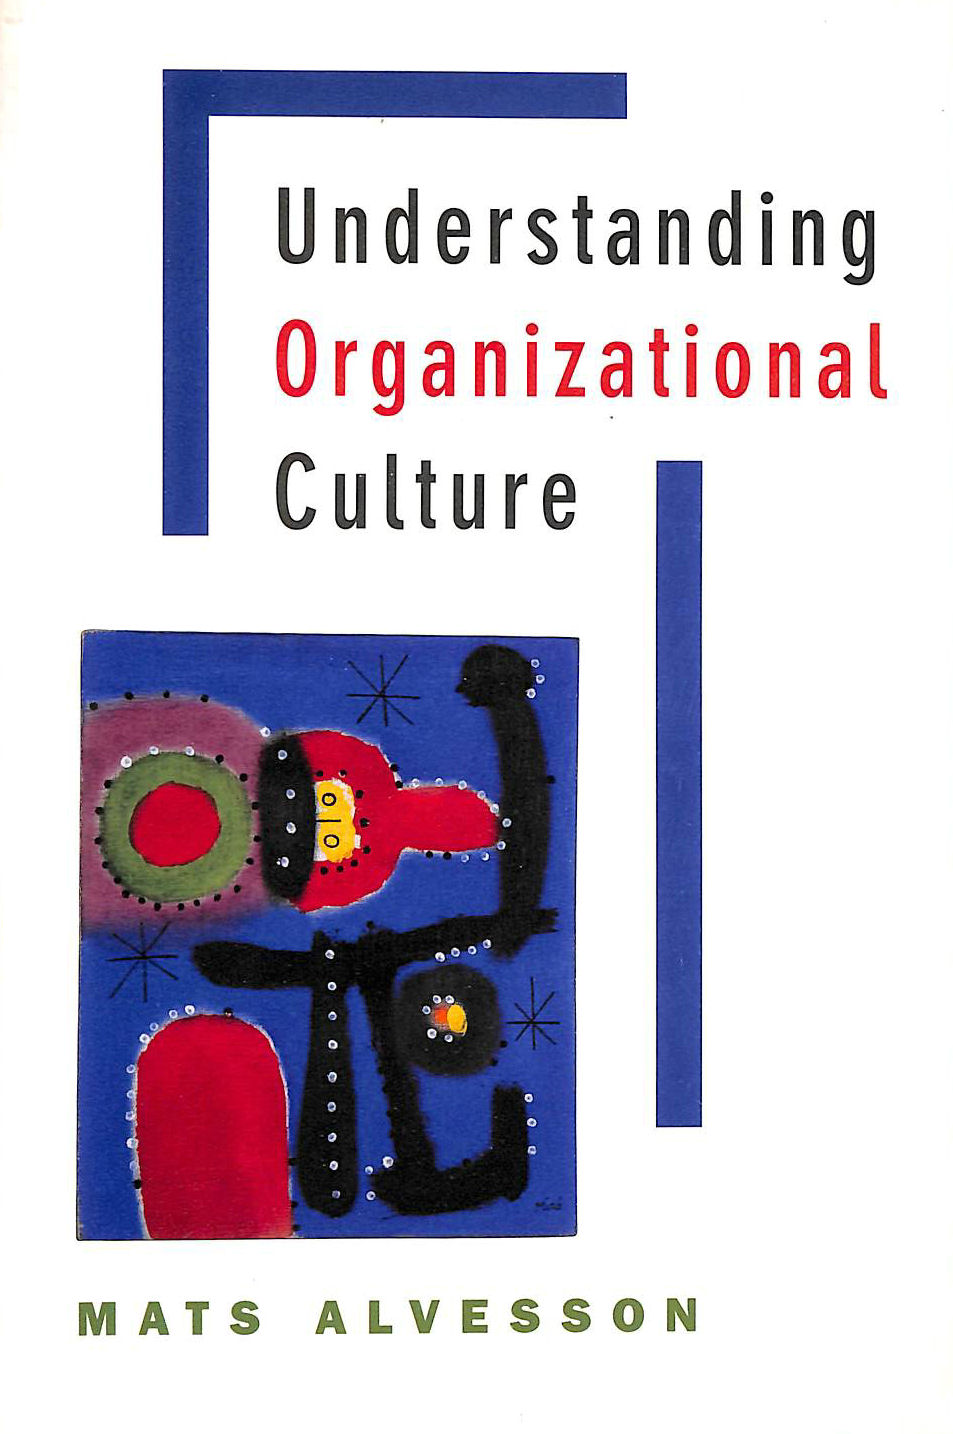 ALVESSON, MATS - Understanding Organizational Culture